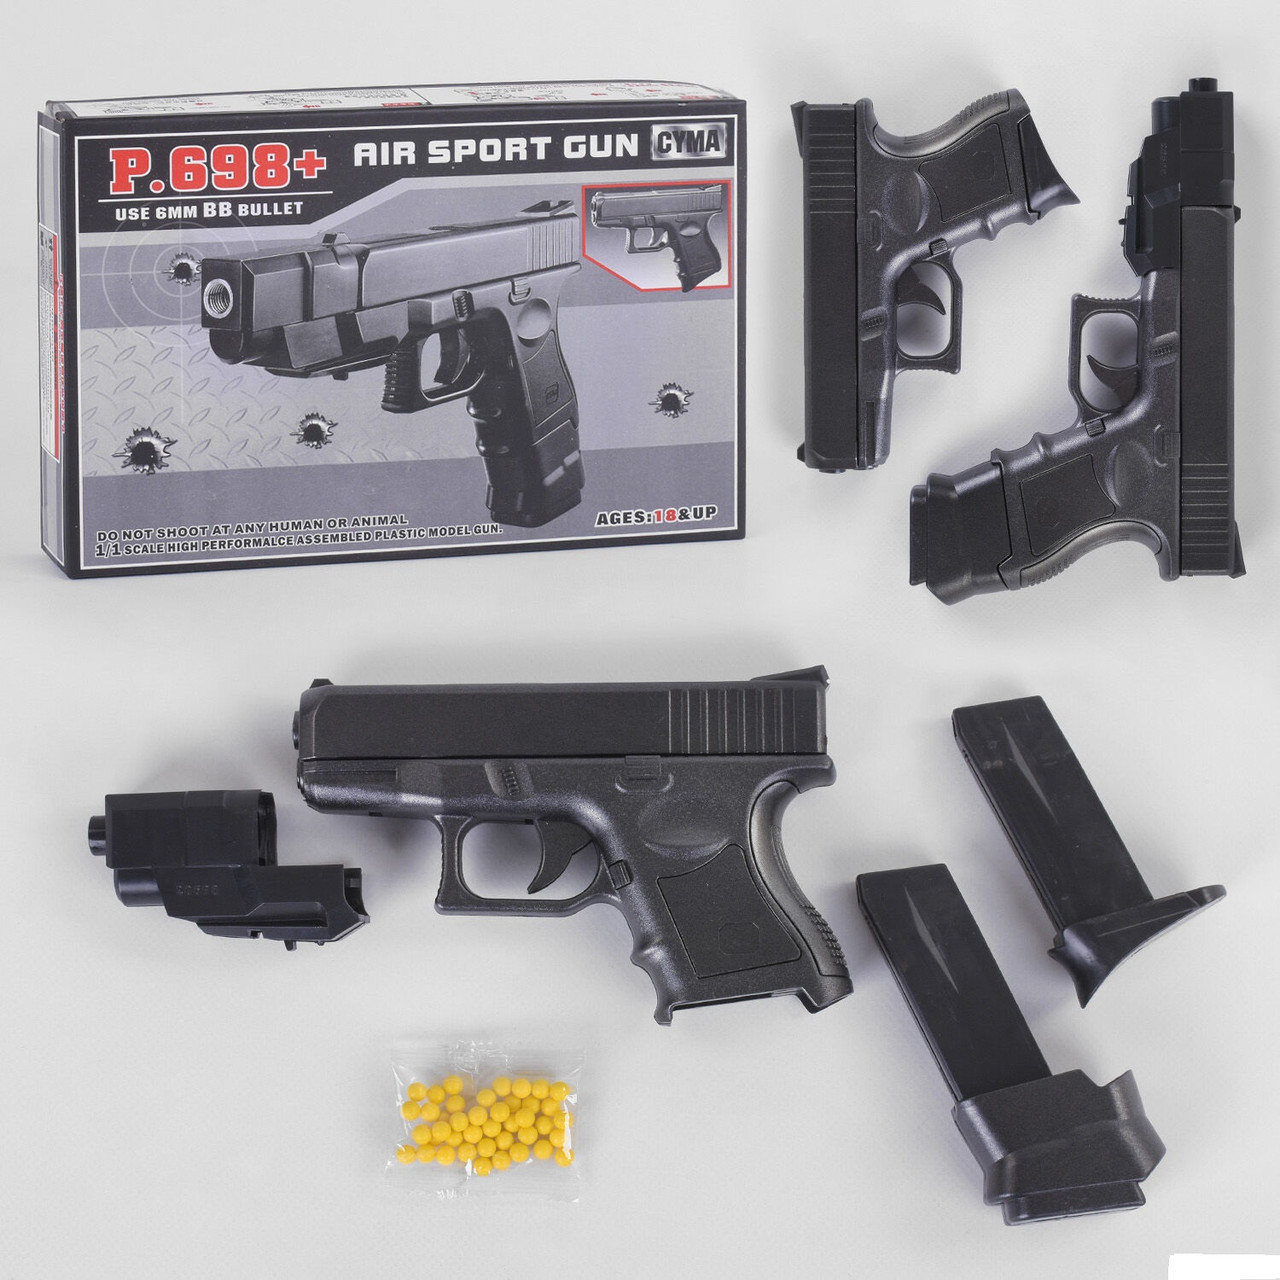 Пістолет Р .698+ L 00004 (48) на кульках, пластиковий, в коробці